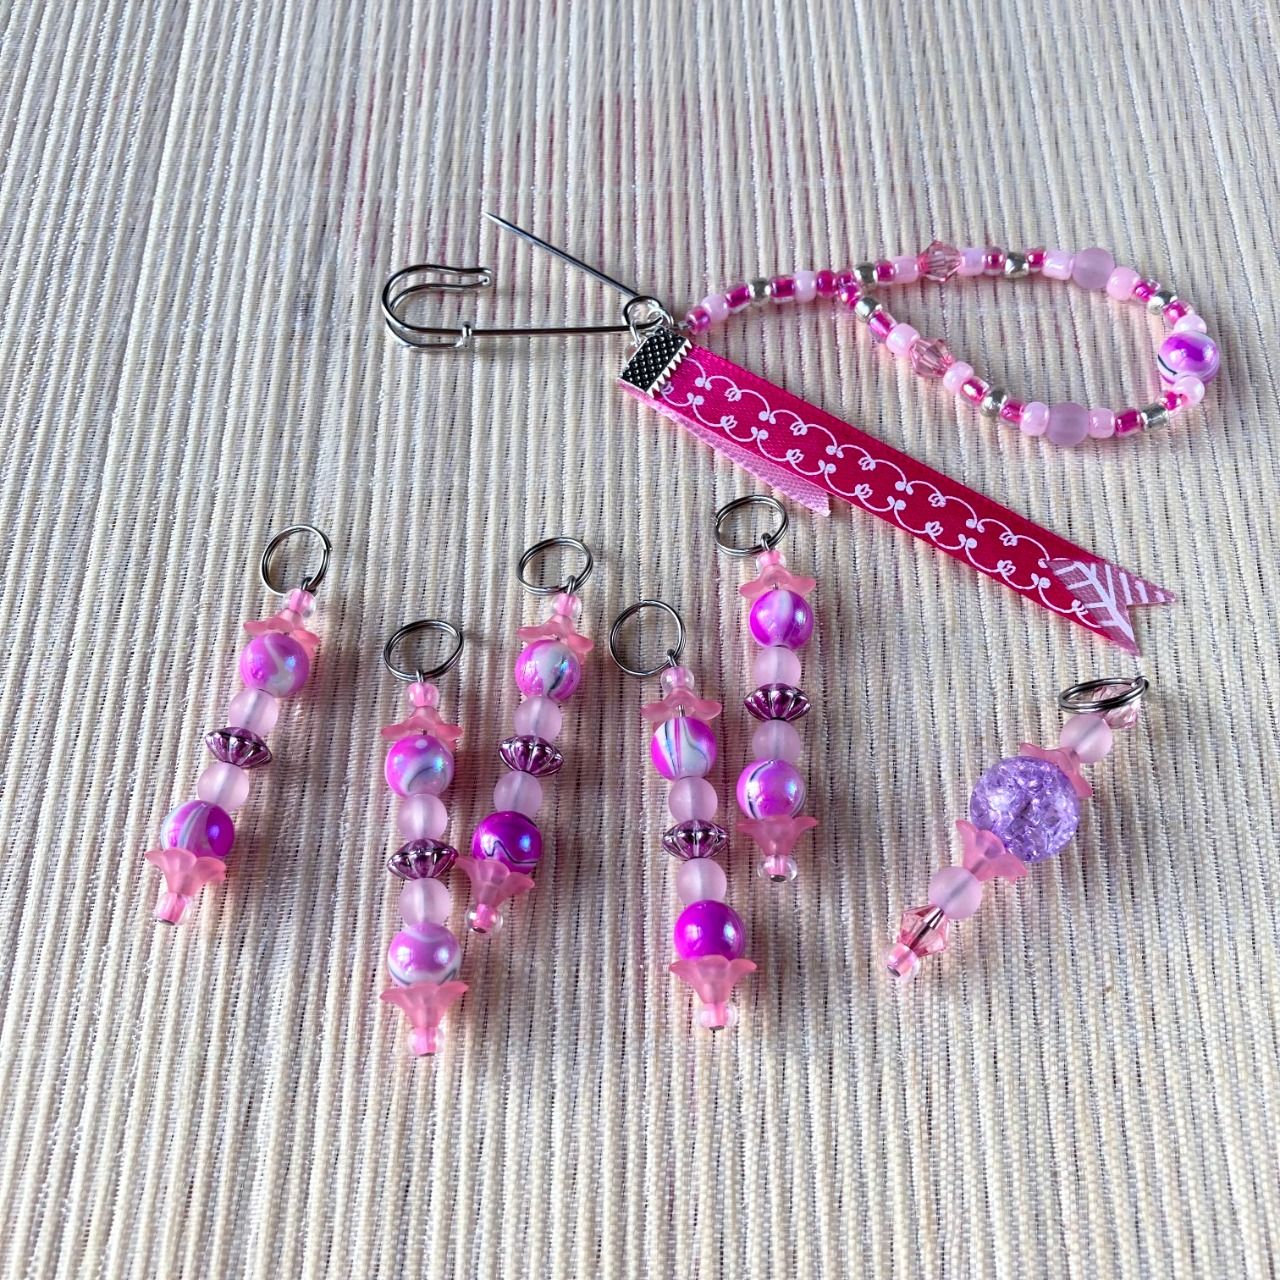 Anneaux marqueurs de mailles pour Tricot et Crochet avec perles Roses